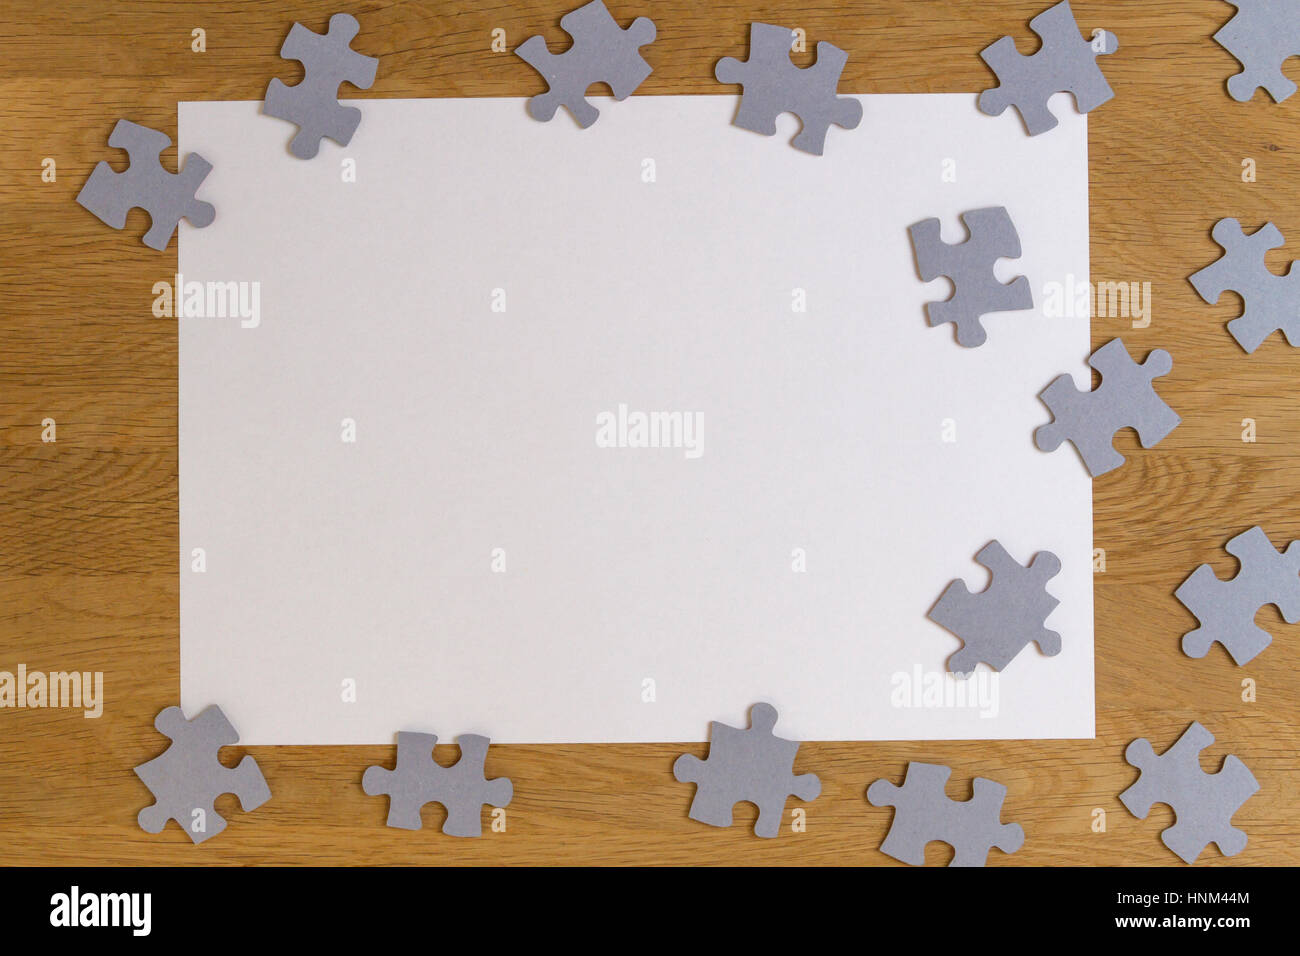 Leeres weißes Blatt Papier, die Puzzleteile auf hölzernen Hintergrund umgeben. Ansicht von oben. Platz für Text kopieren Stockfoto